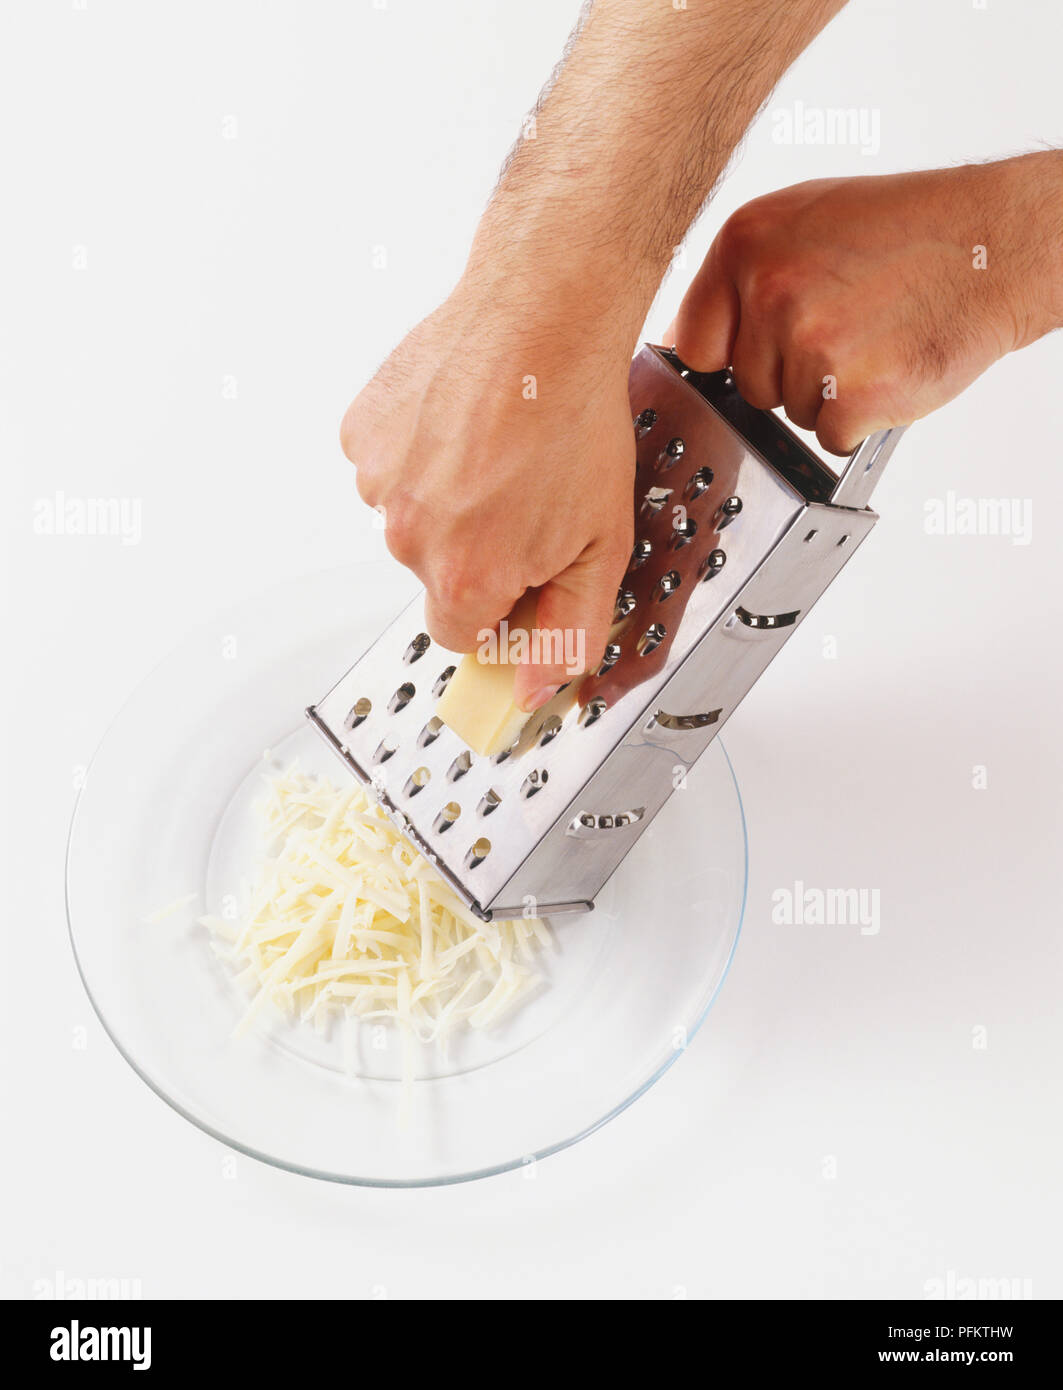 Persona grattugiare il formaggio Foto Stock